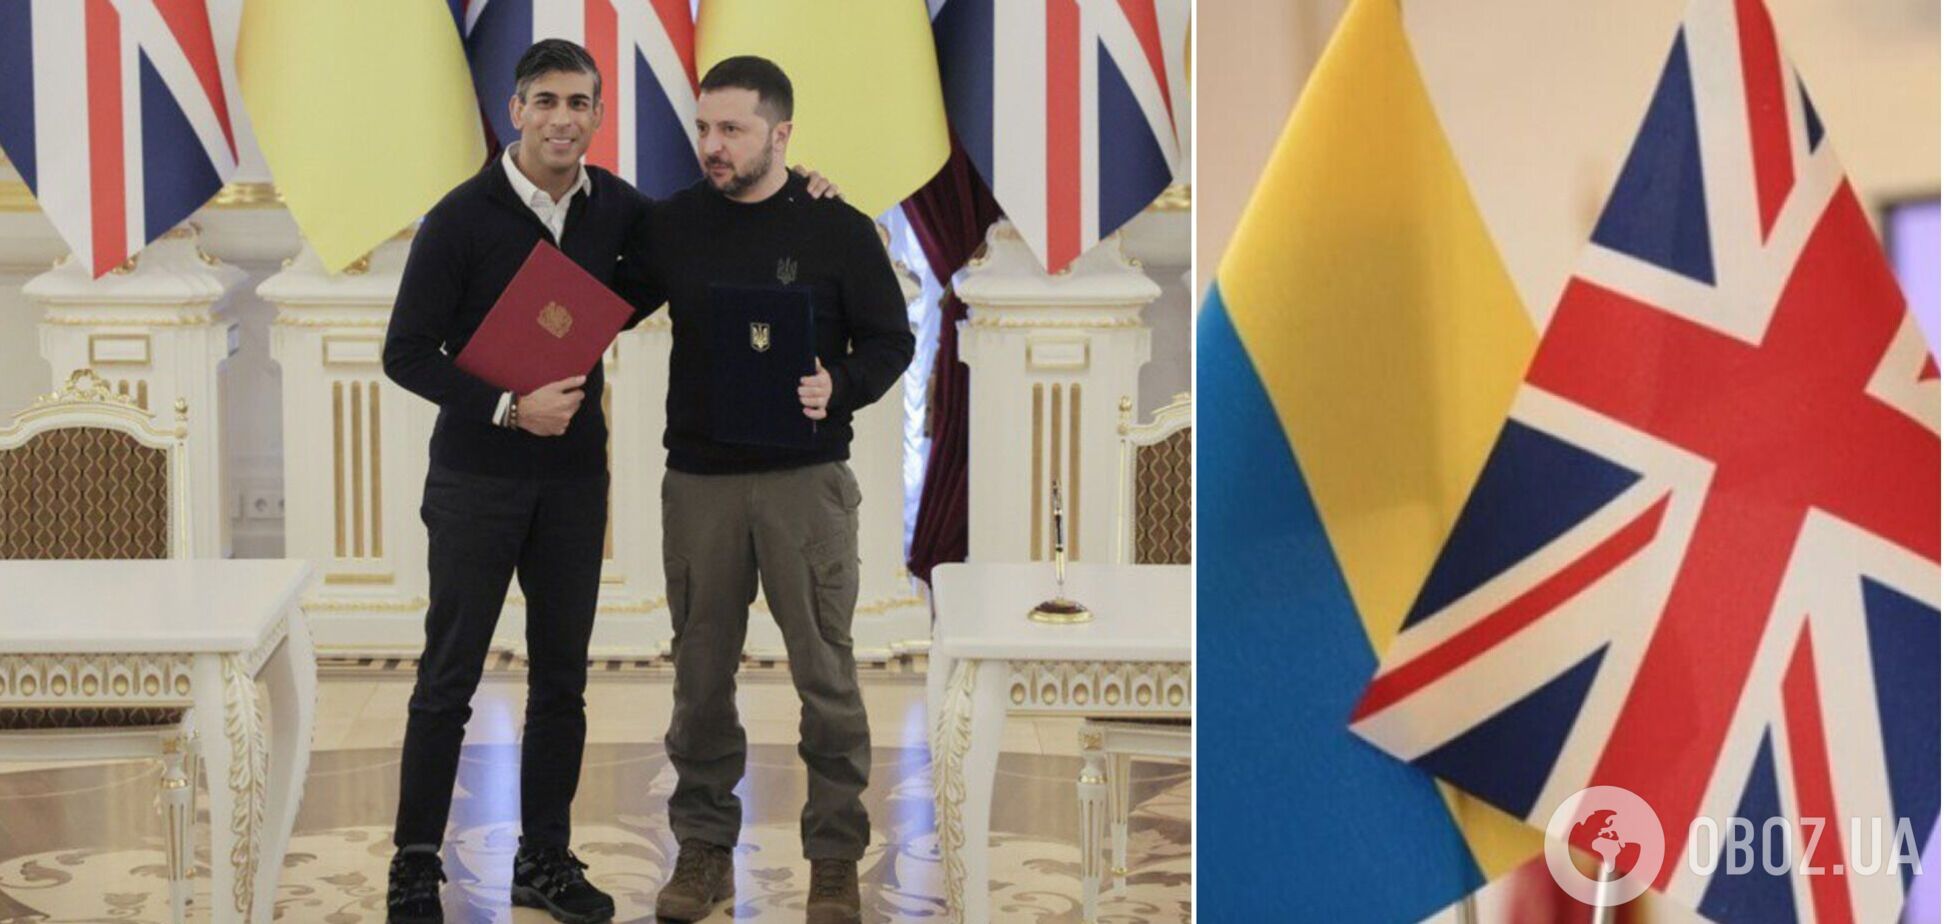 Украина и Великобритания заключили соглашение о сотрудничестве в сфере безопасности. Полный текст